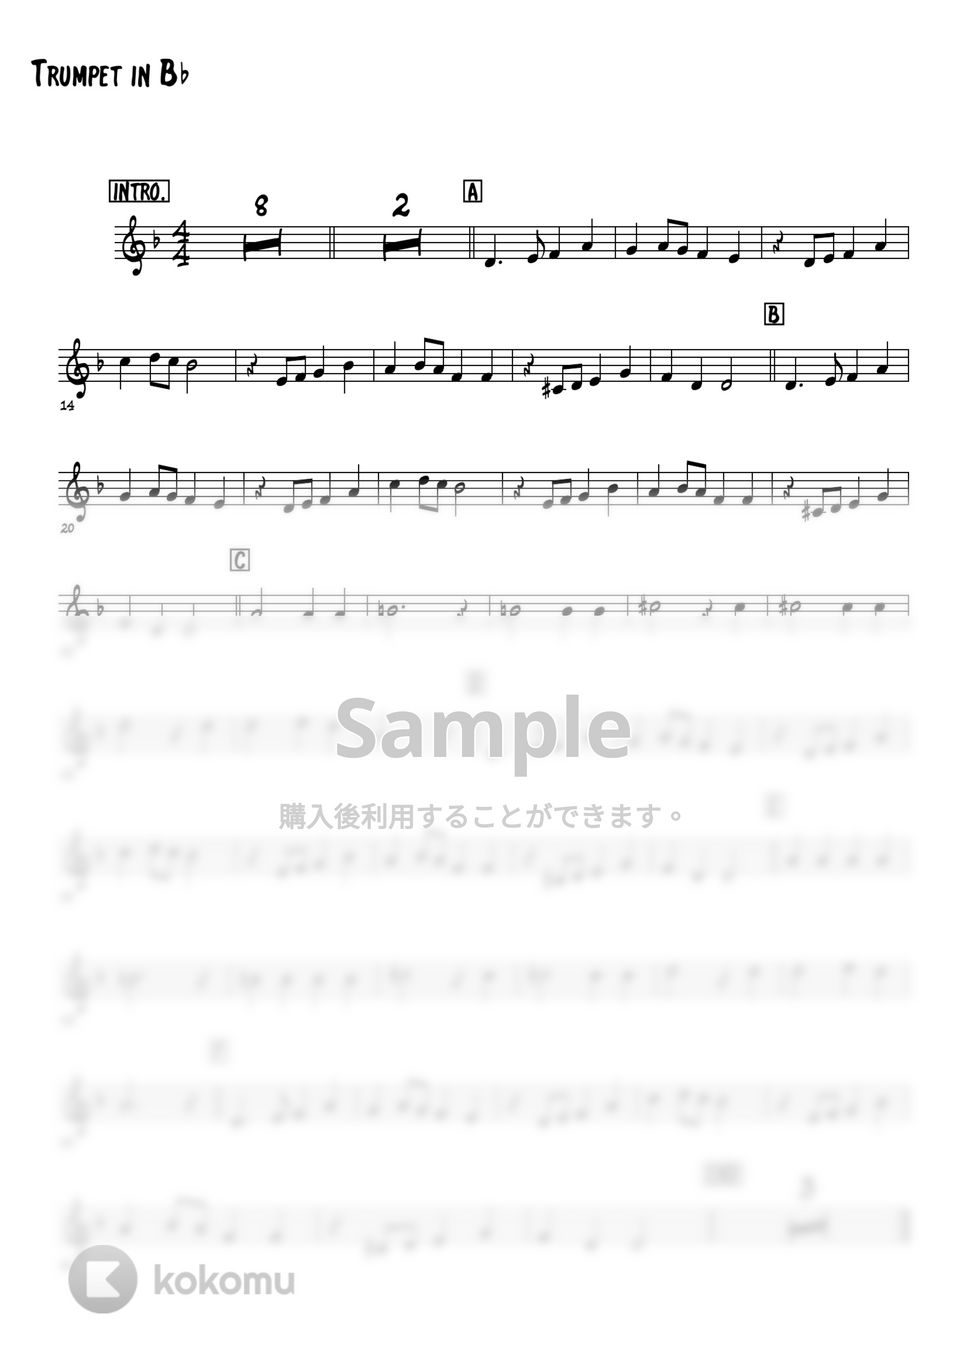 中村八大 - 遠くへ行きたい (トランペットメロディー楽譜) by 高田将利